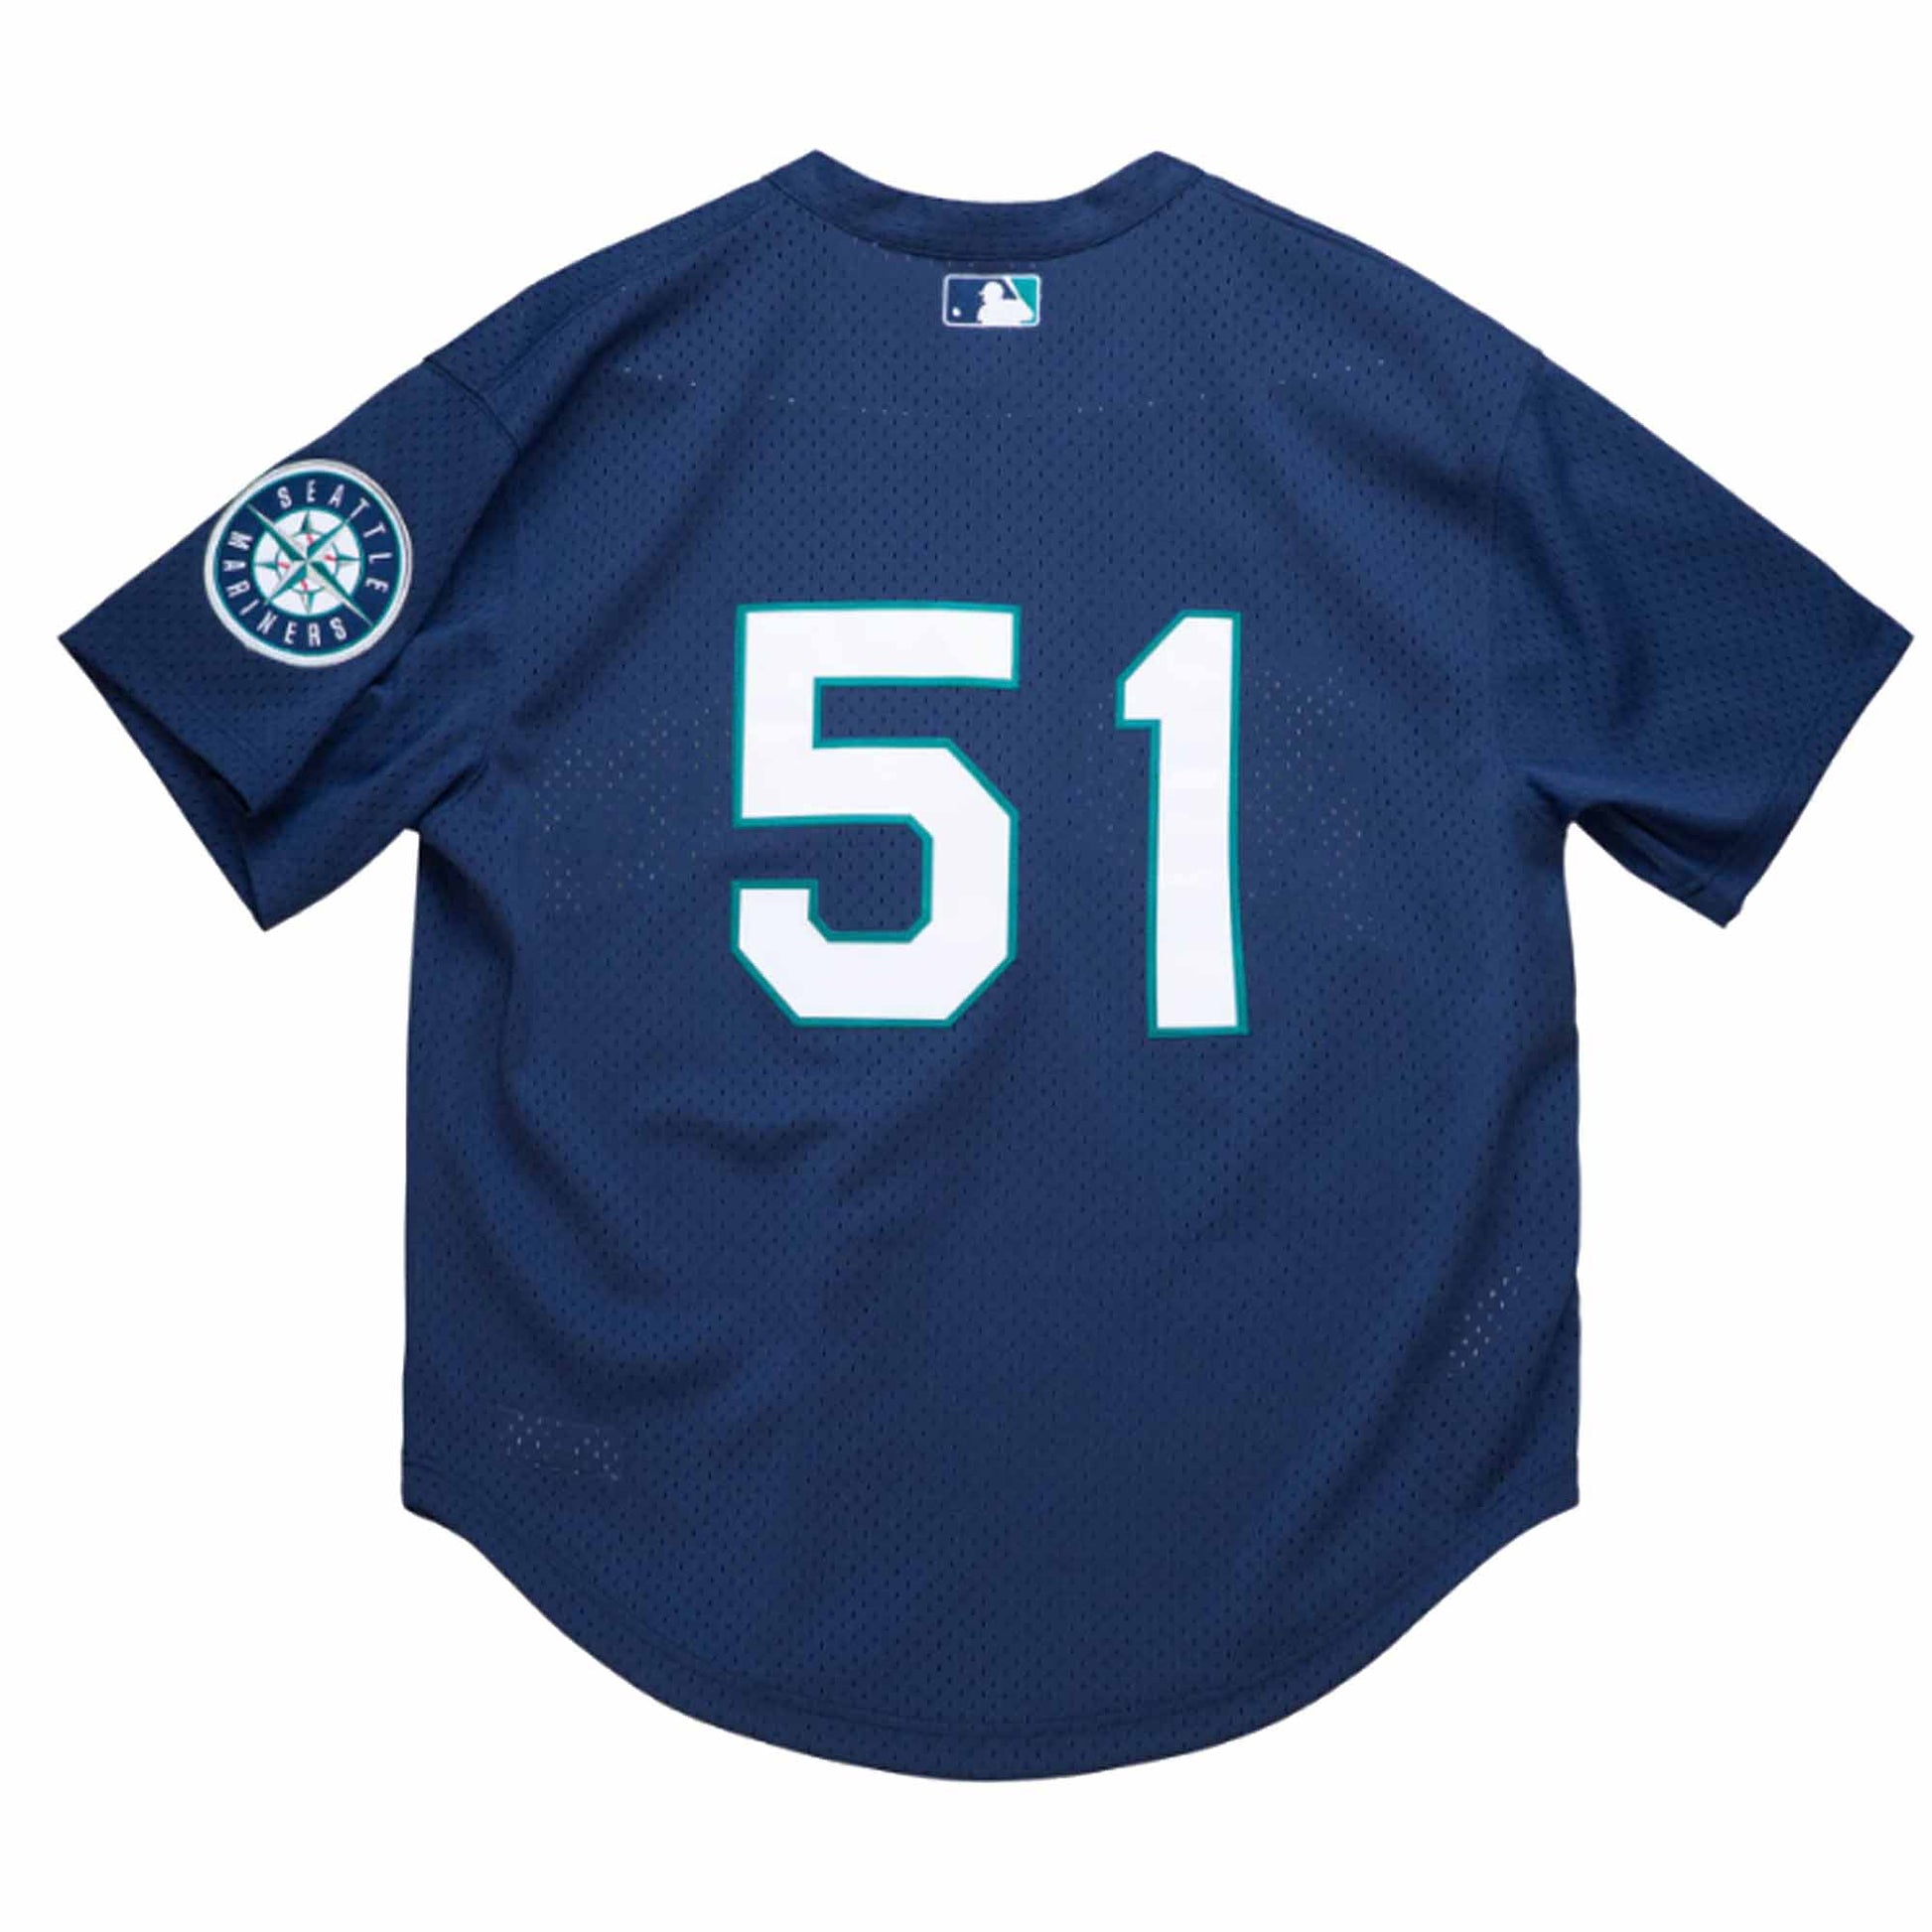 Seattle Mariners - Ichiro Suzuki MLB T-shirt